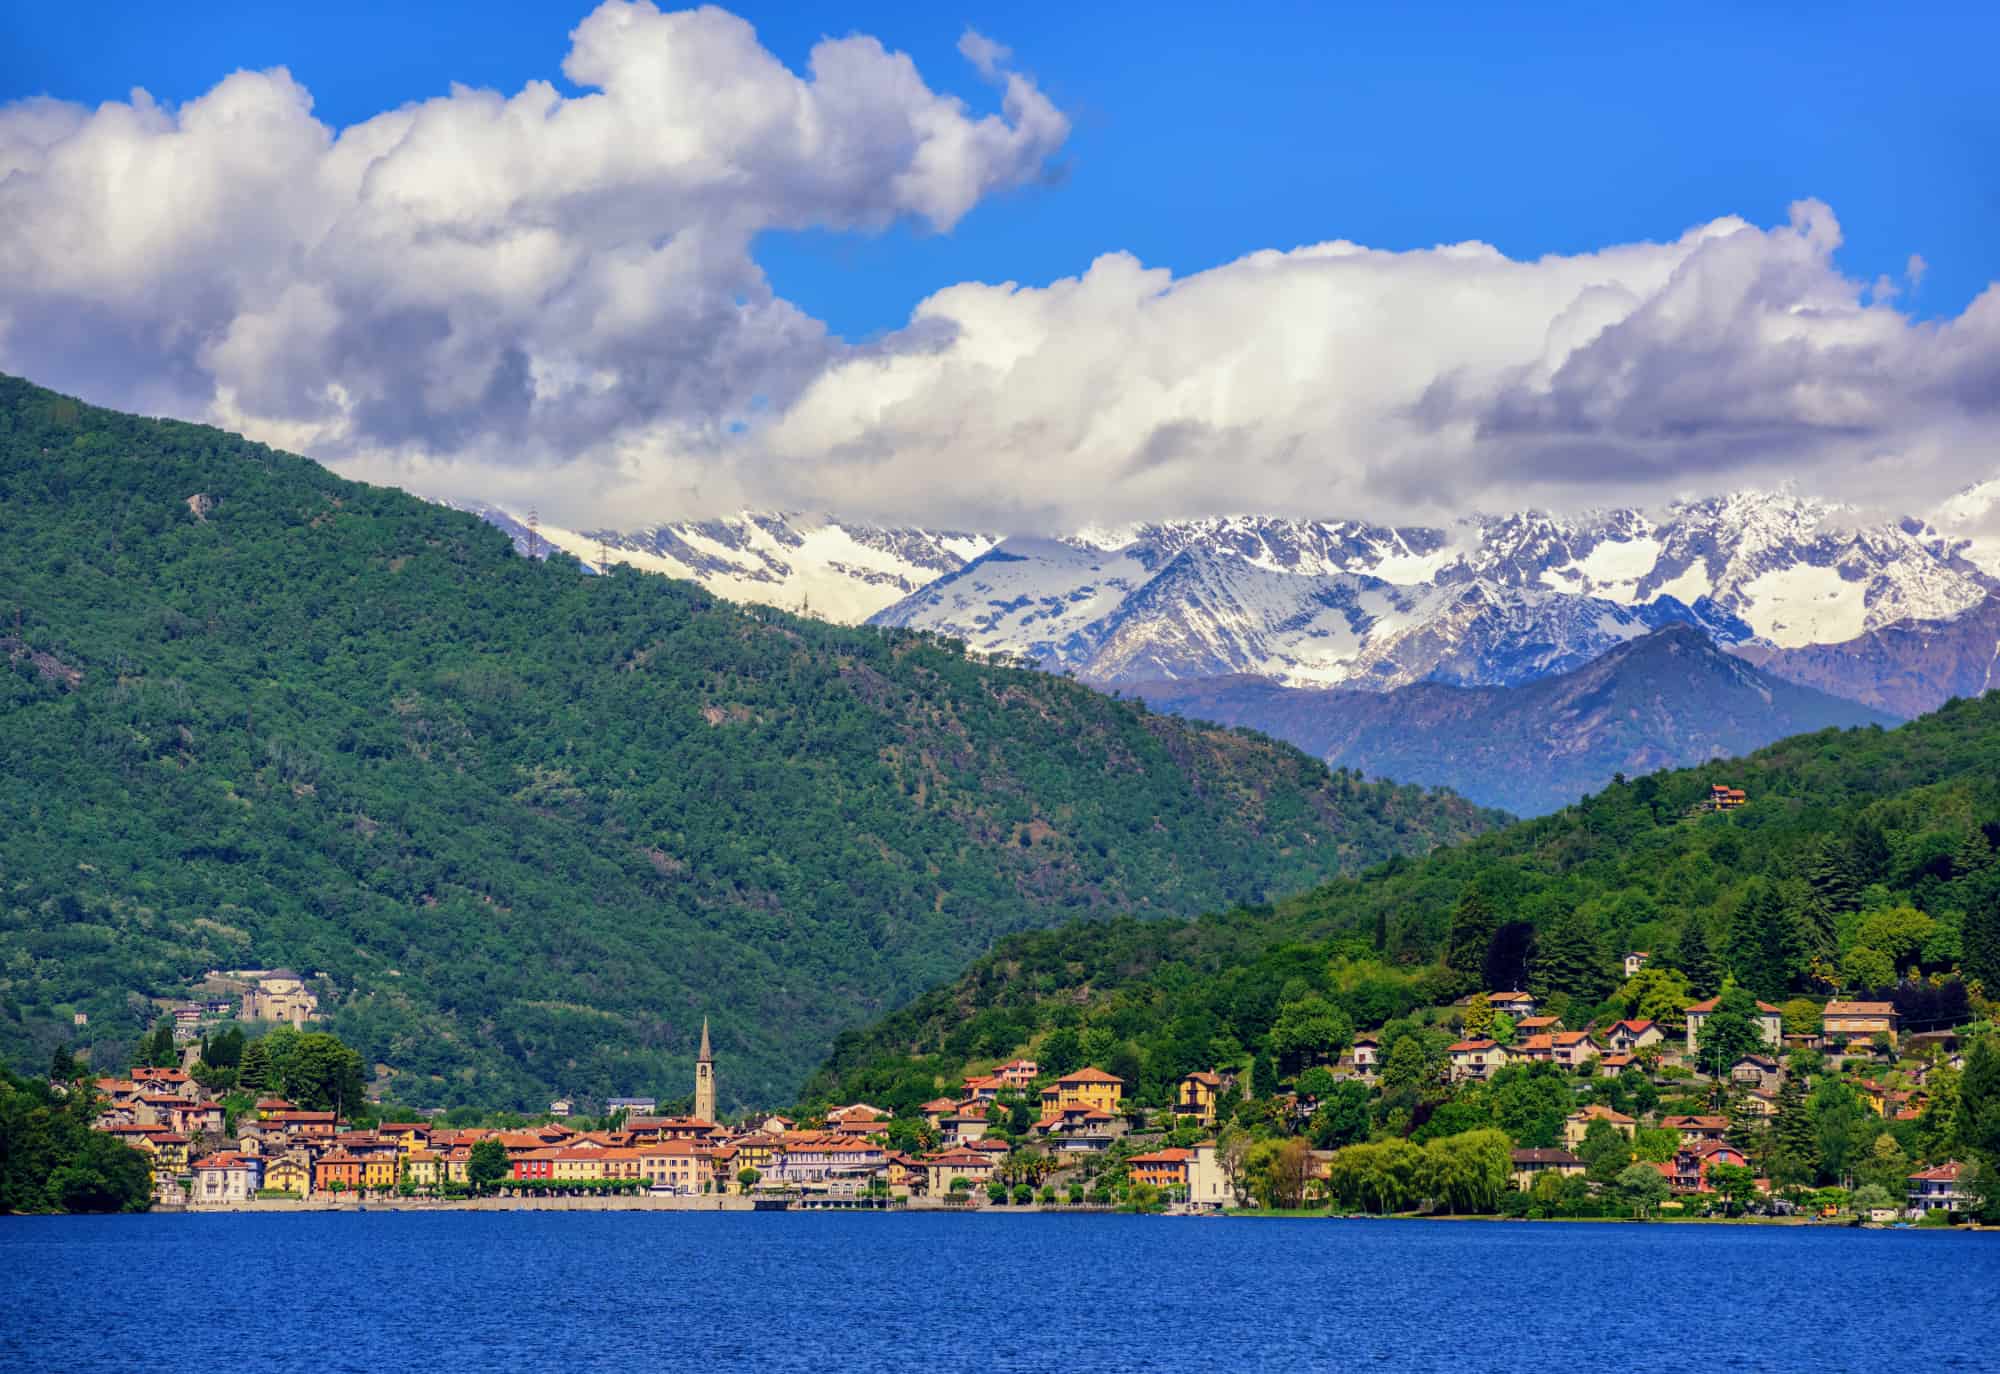 Mergozzo town, Lago Maggiore and Alps, Italy